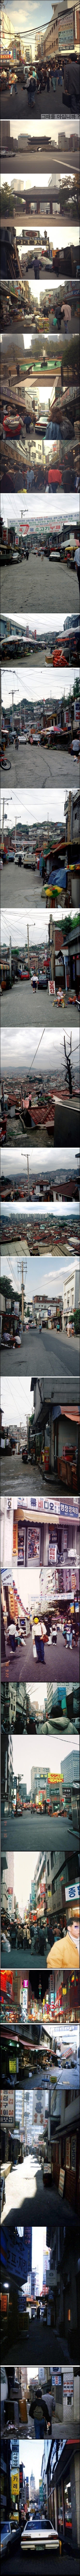 90년대 초반 한국